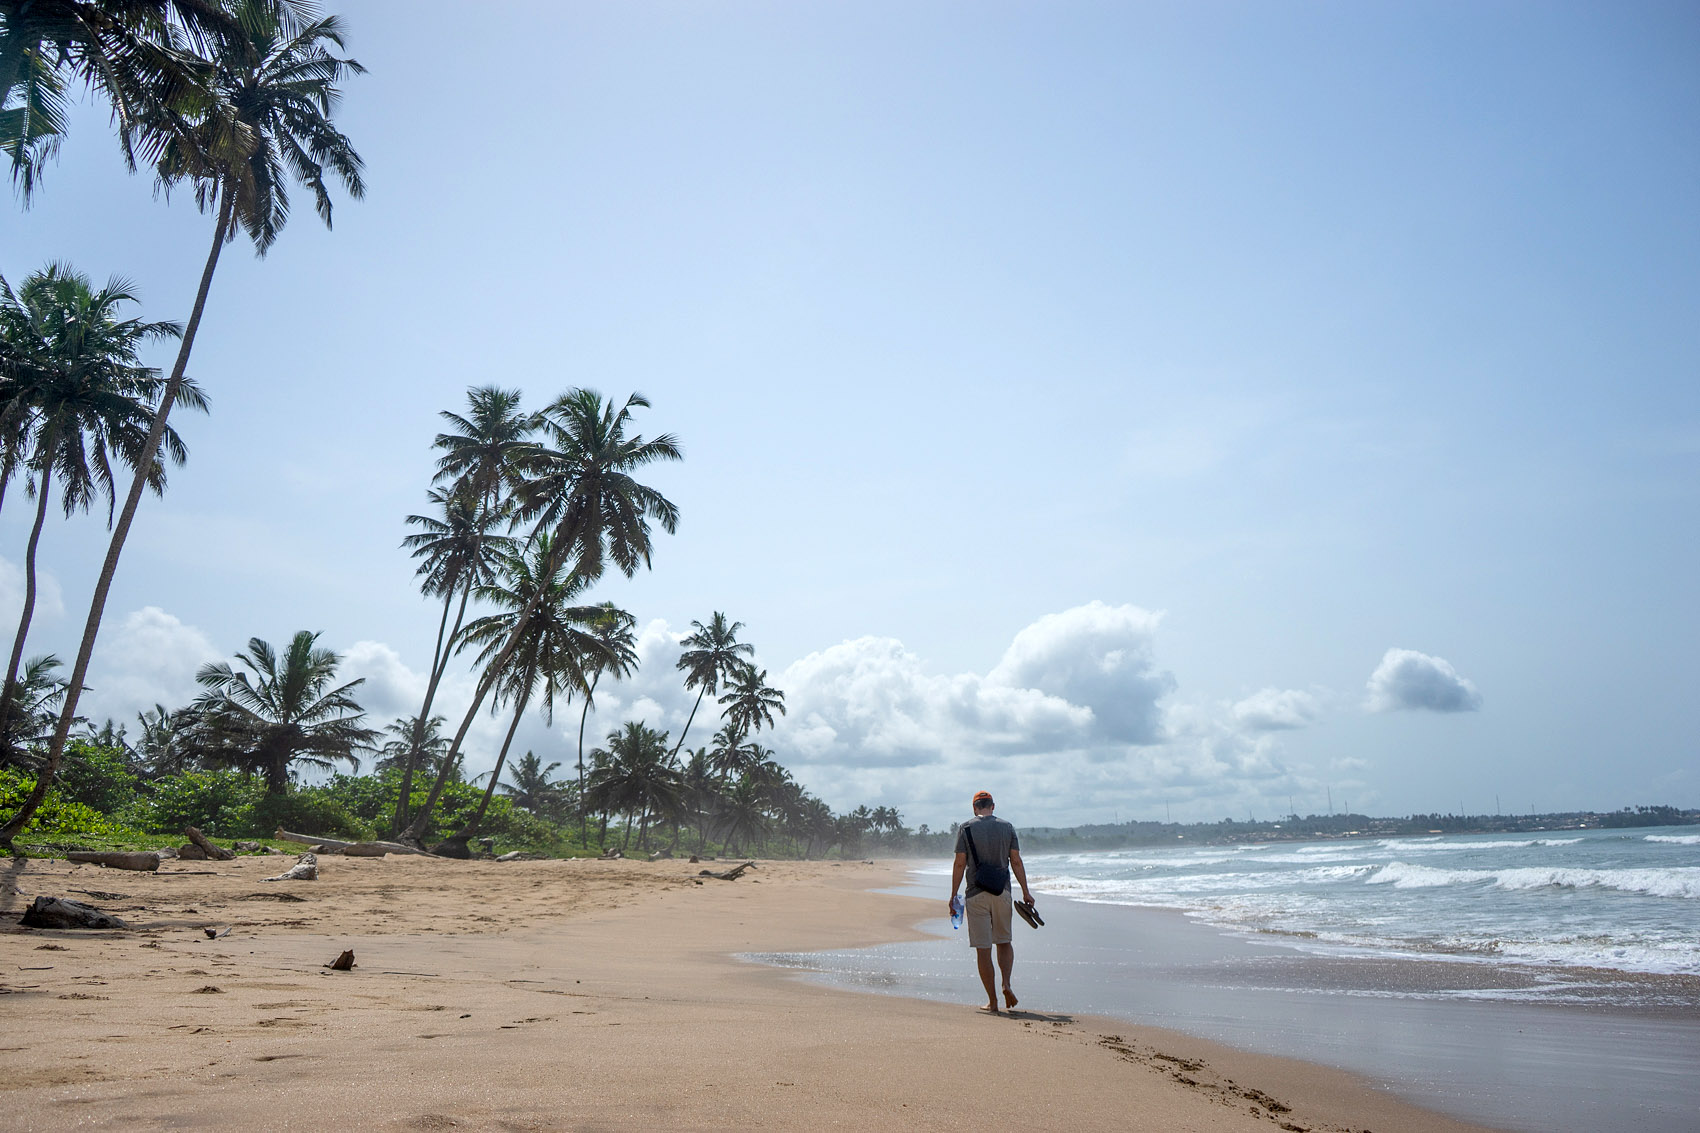 Am Ghana Strand spazieren gehen